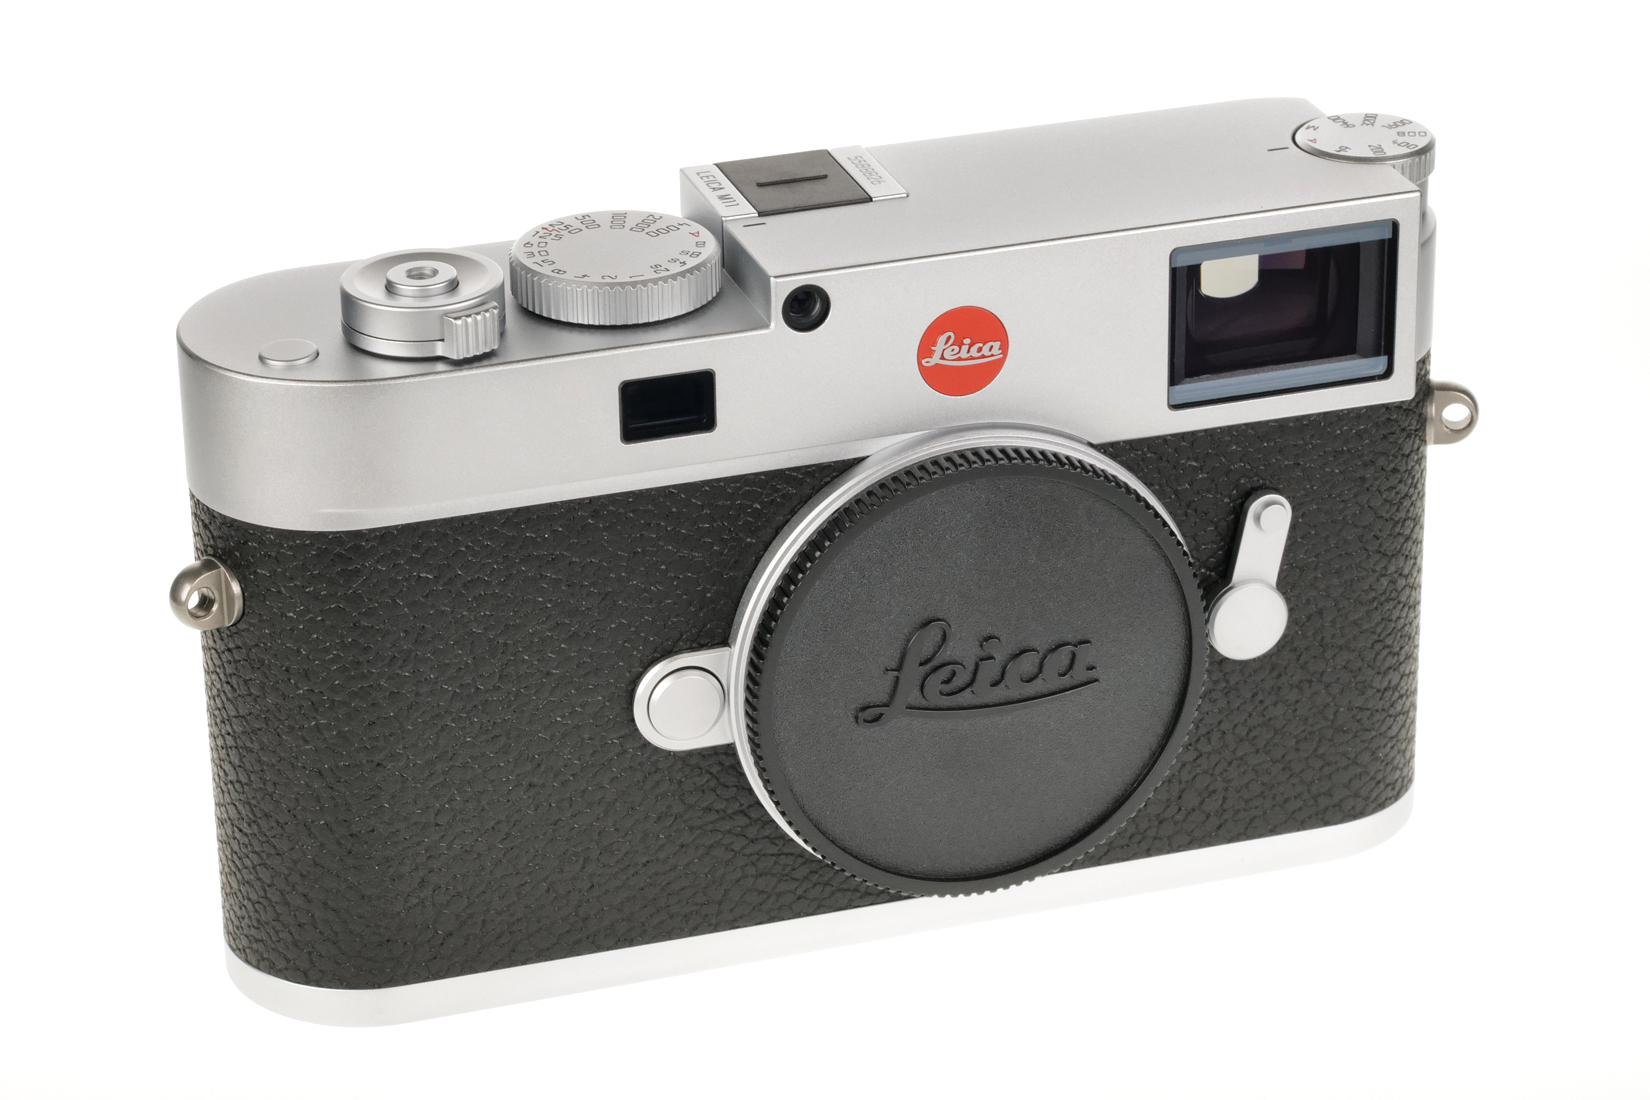 Leica M11, silver chrome 20201